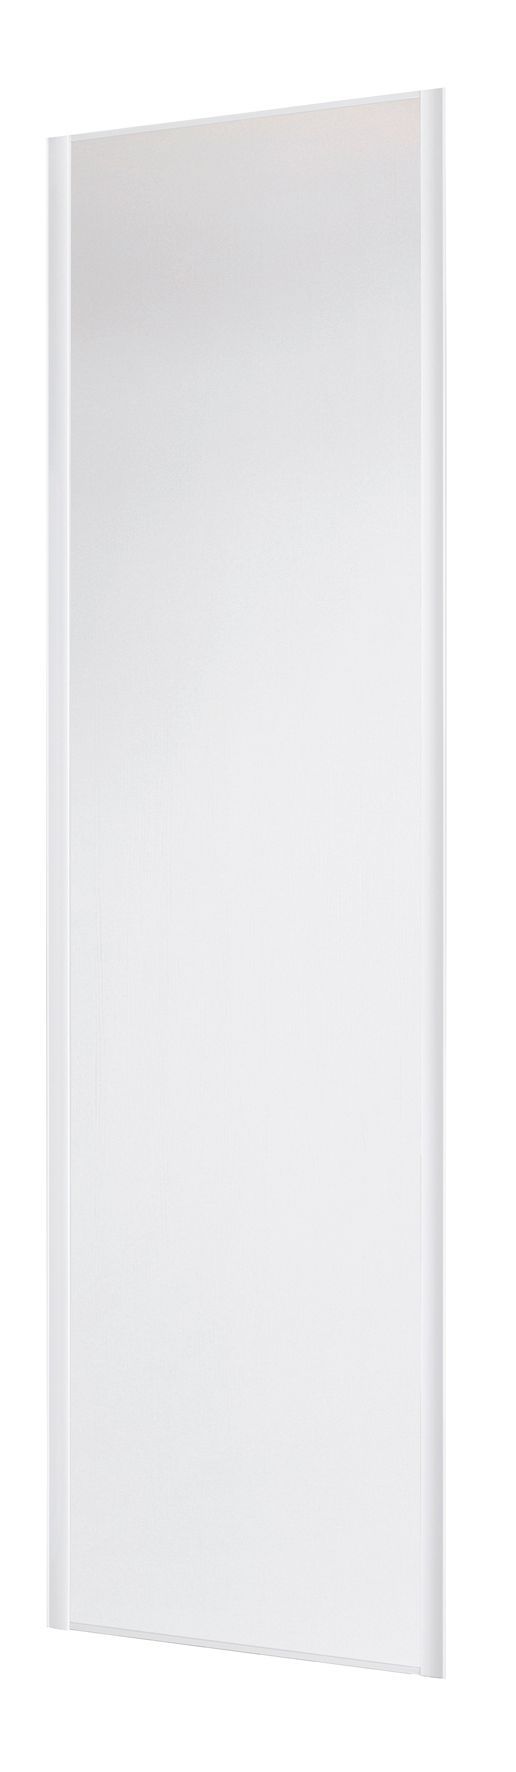 Form Valla White Sliding wardrobe door (H) 2260mm x (W) 772mm